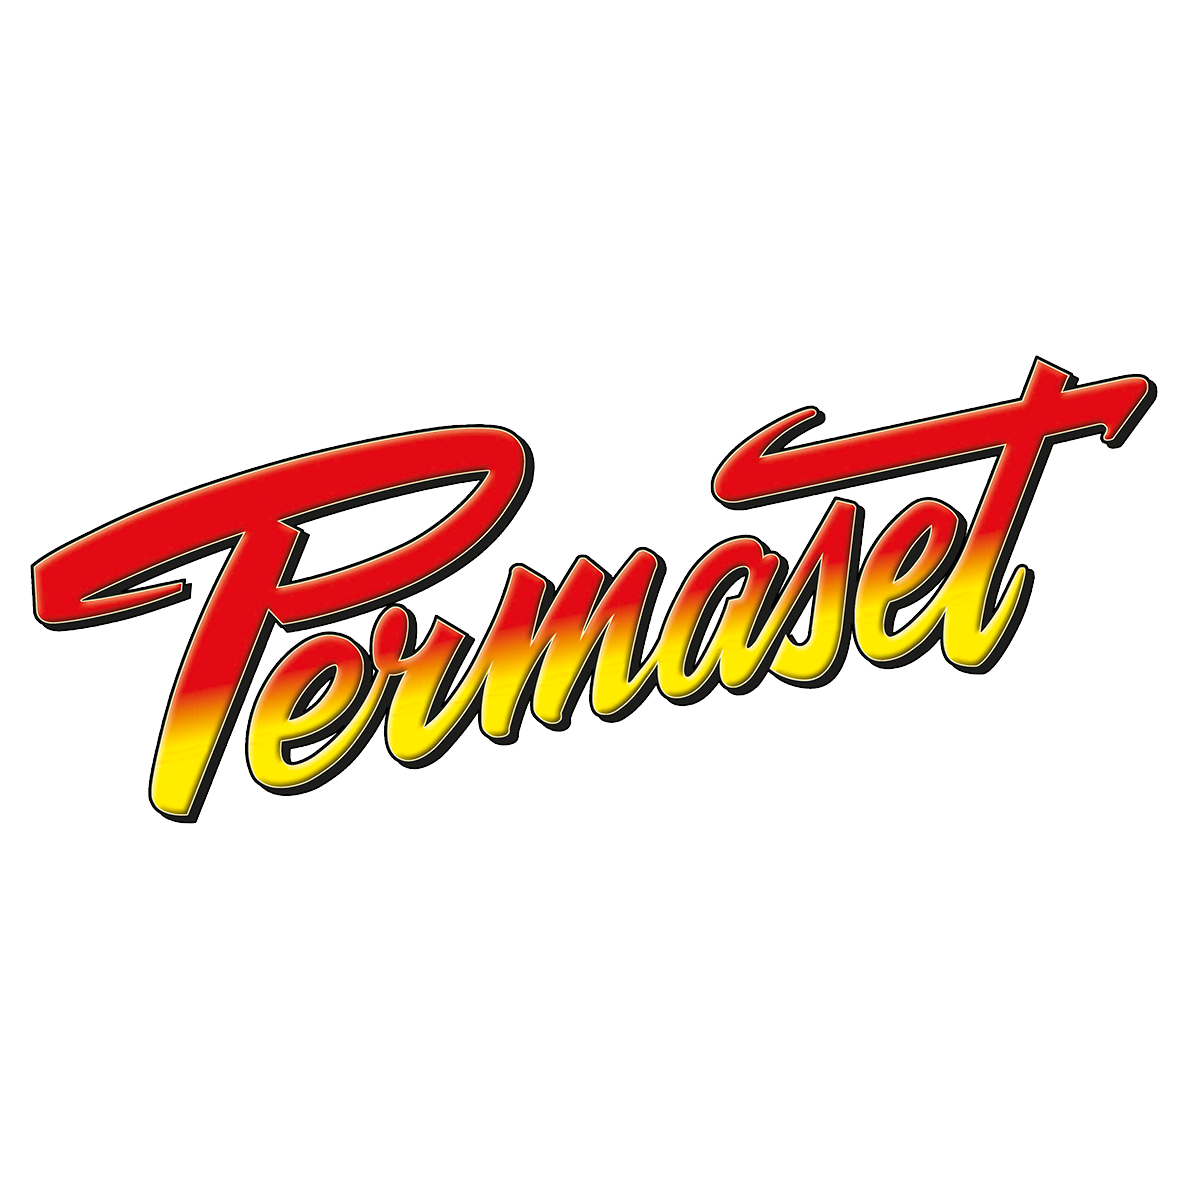 Permaset Logo.png